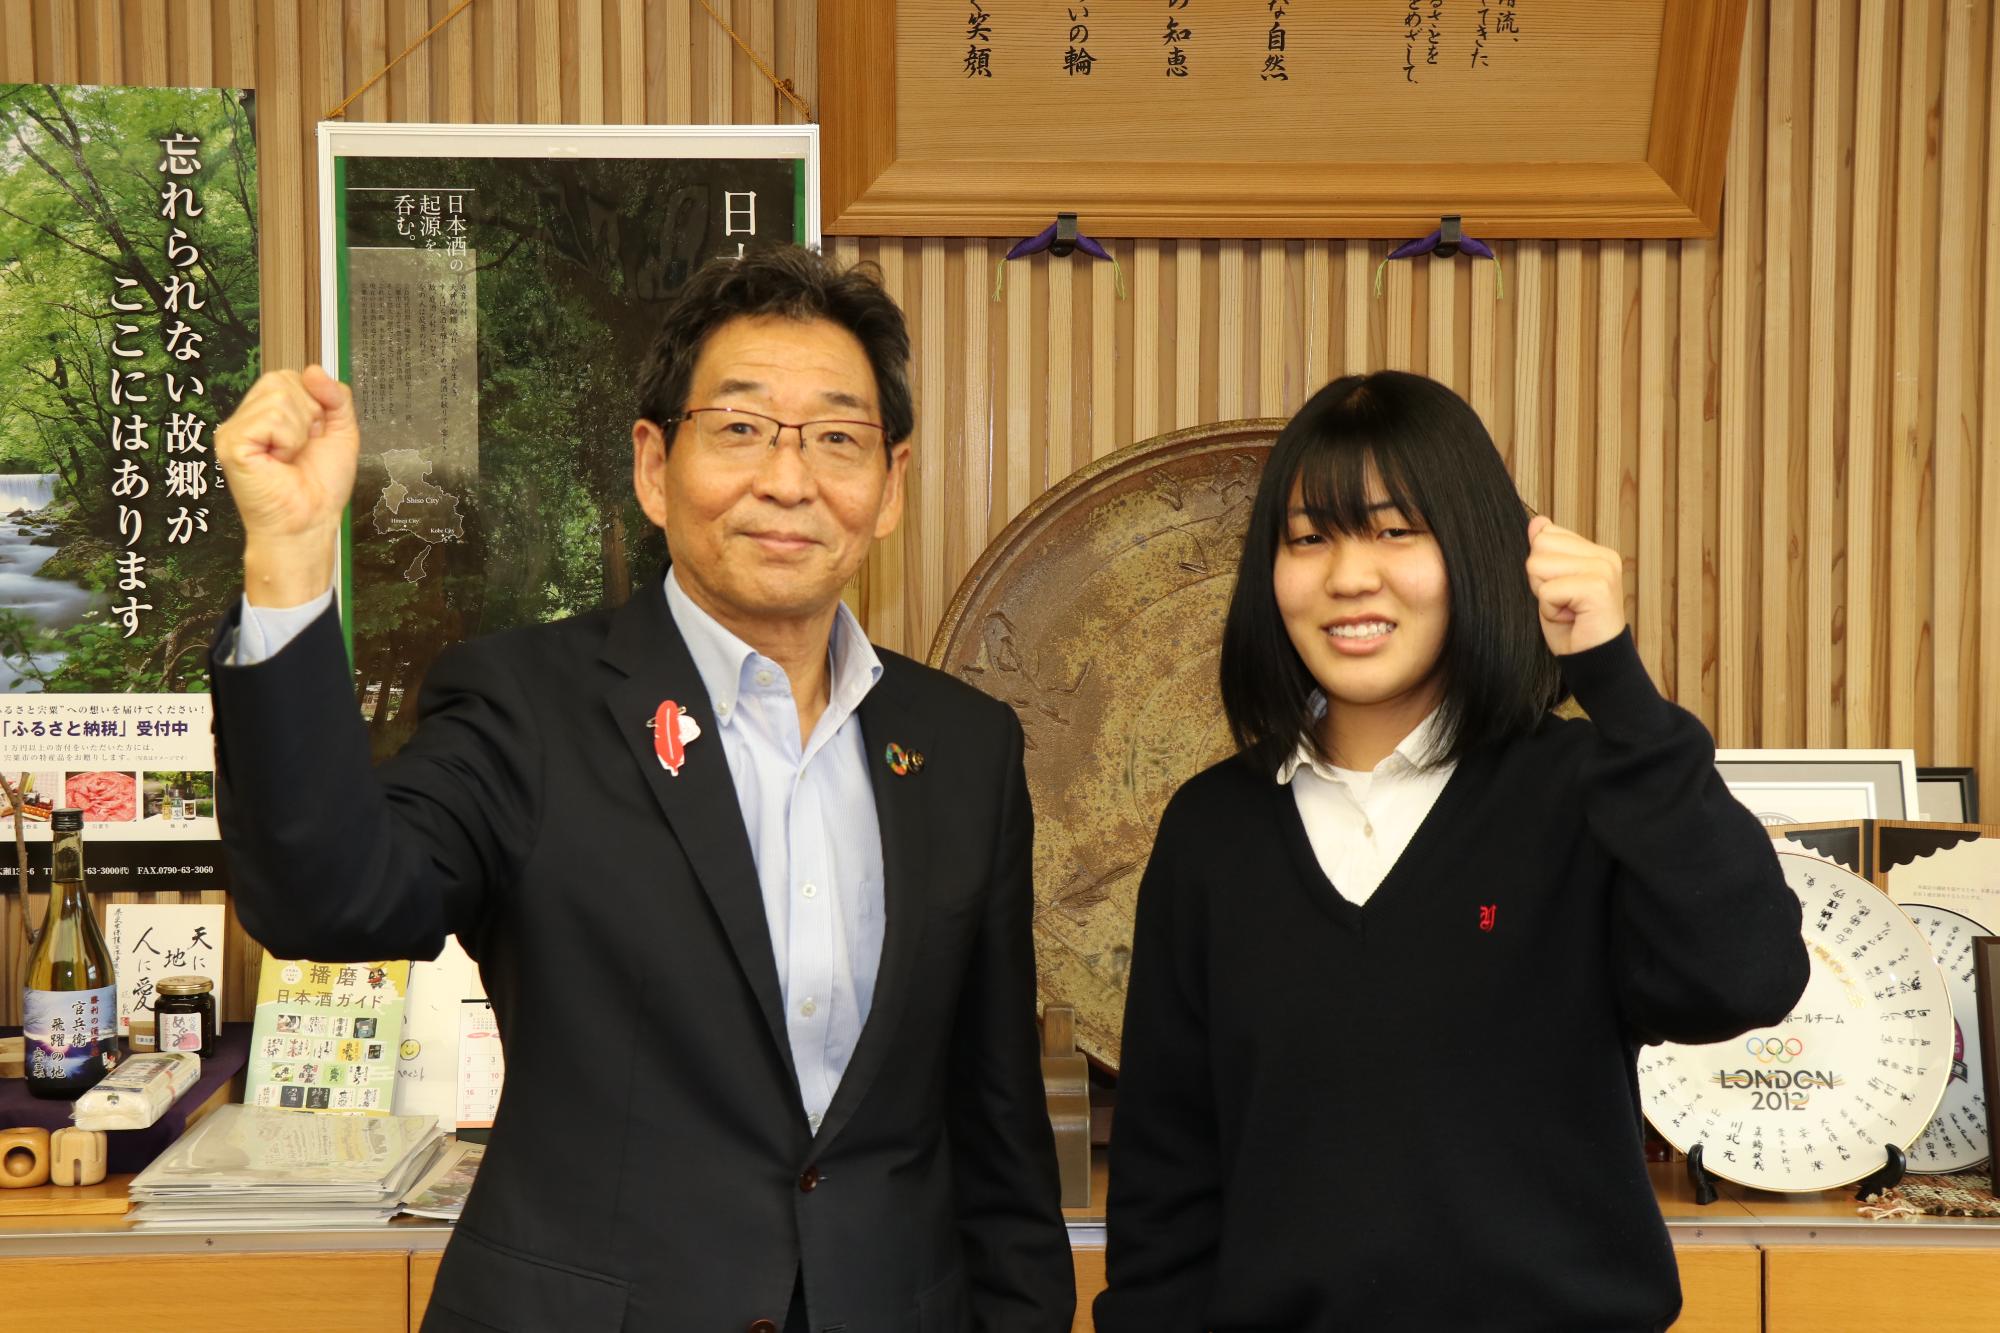 右は山崎高校の秦さん、左は福元市長が並んでガッツポーズをしている写真